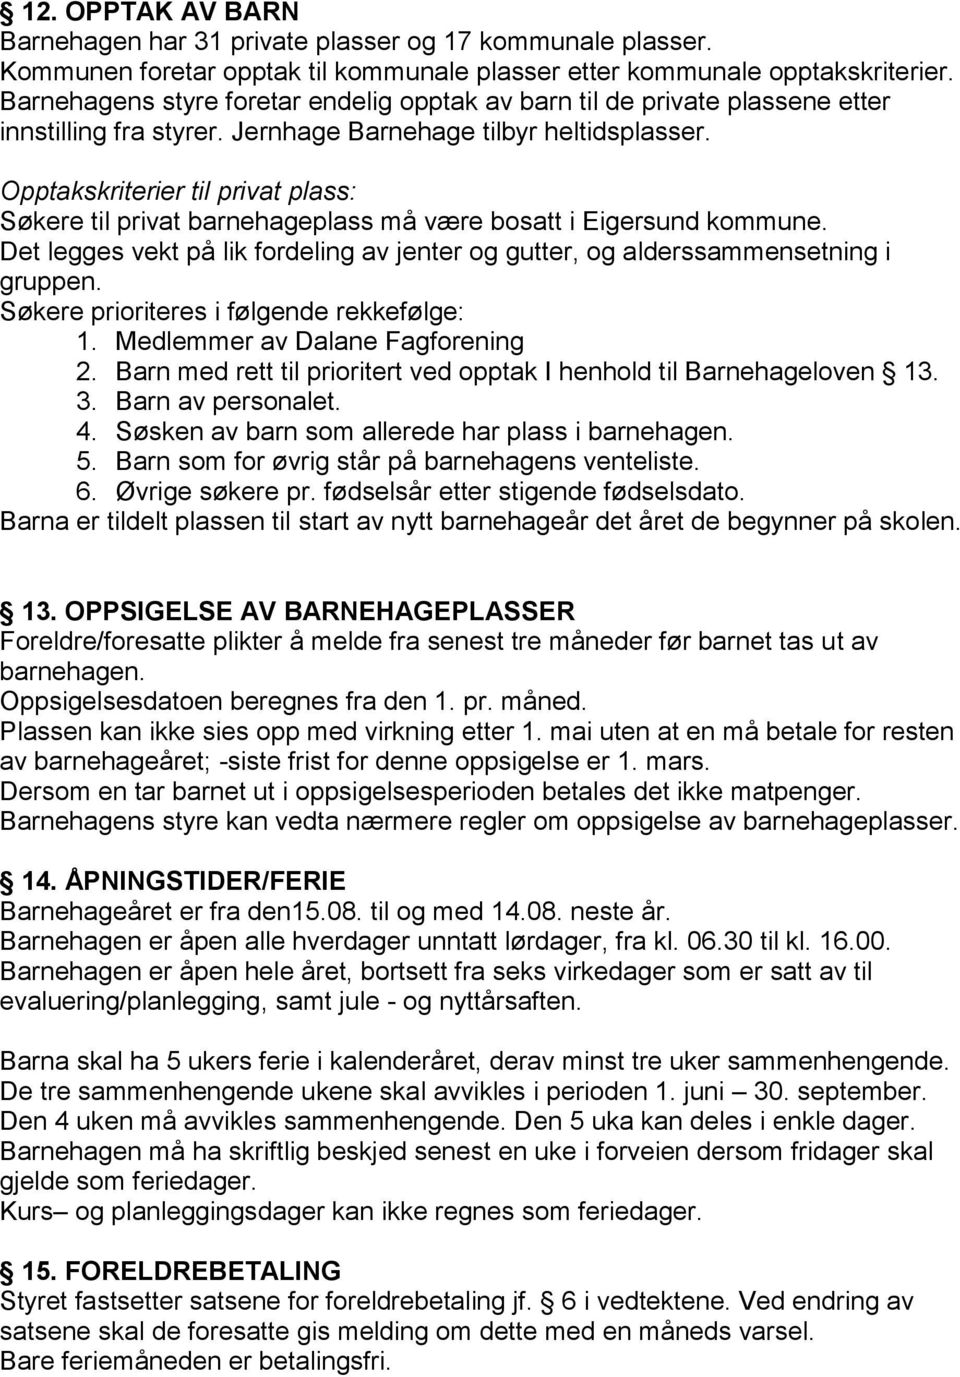 Opptakskriterier til privat plass: Søkere til privat barnehageplass må være bosatt i Eigersund kommune. Det legges vekt på lik fordeling av jenter og gutter, og alderssammensetning i gruppen.